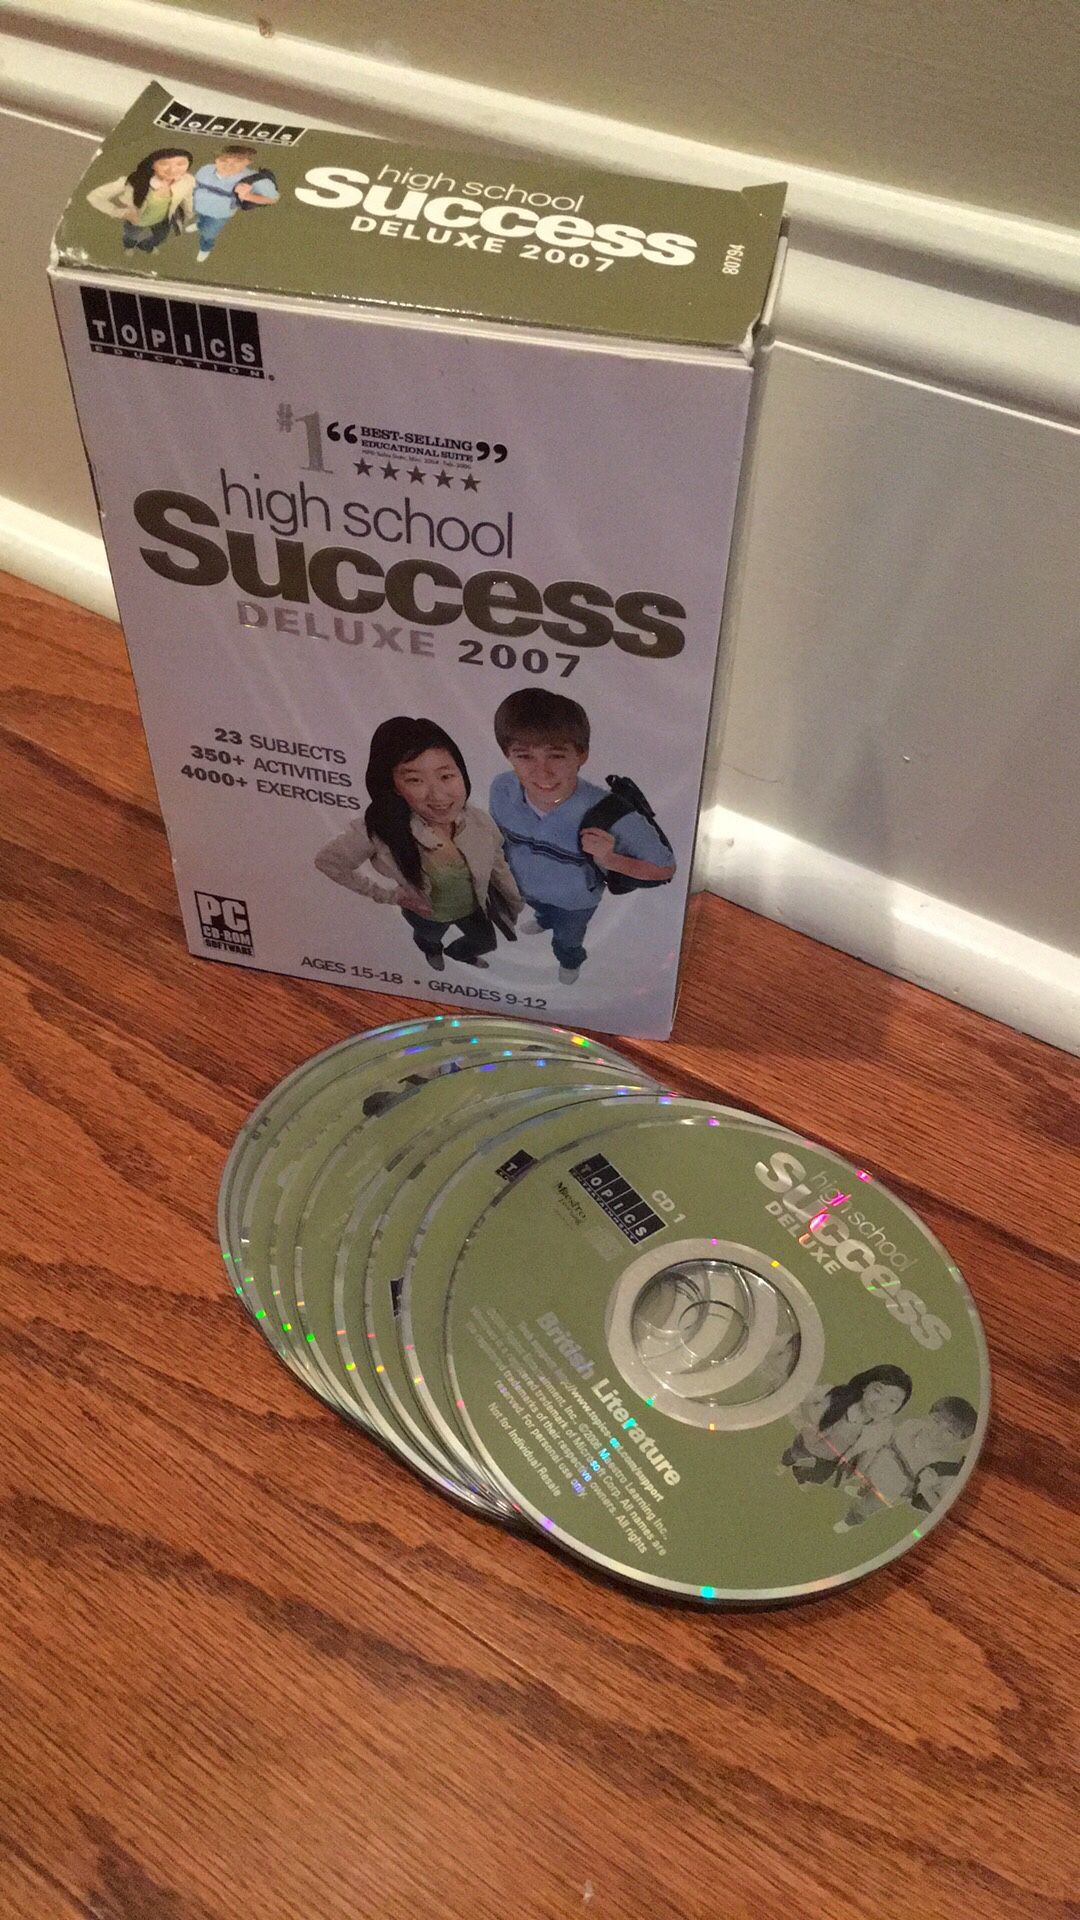 High School Success CDs